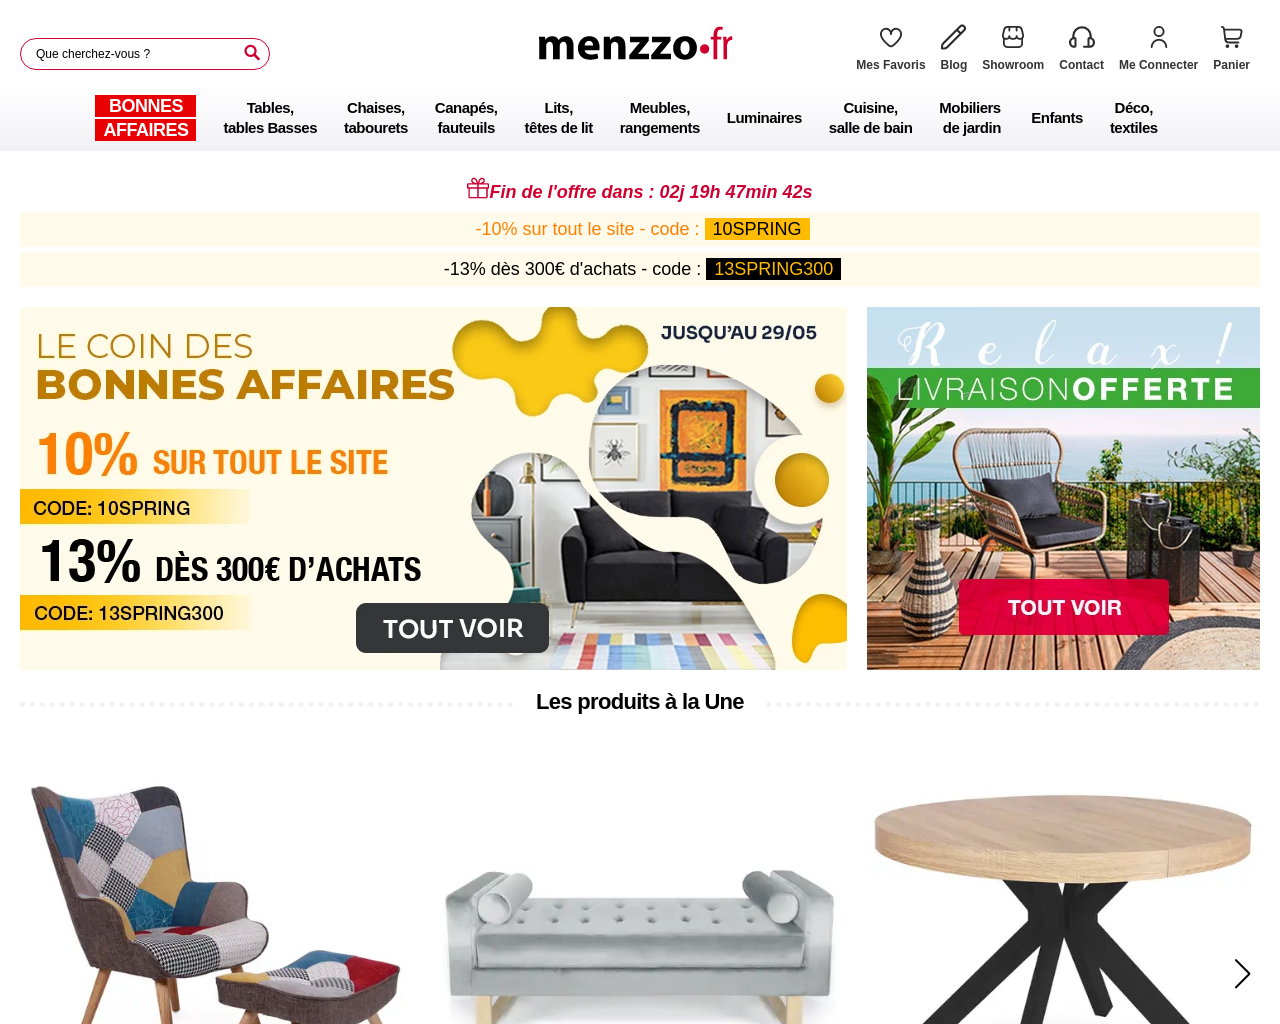 www.menzzo.fr